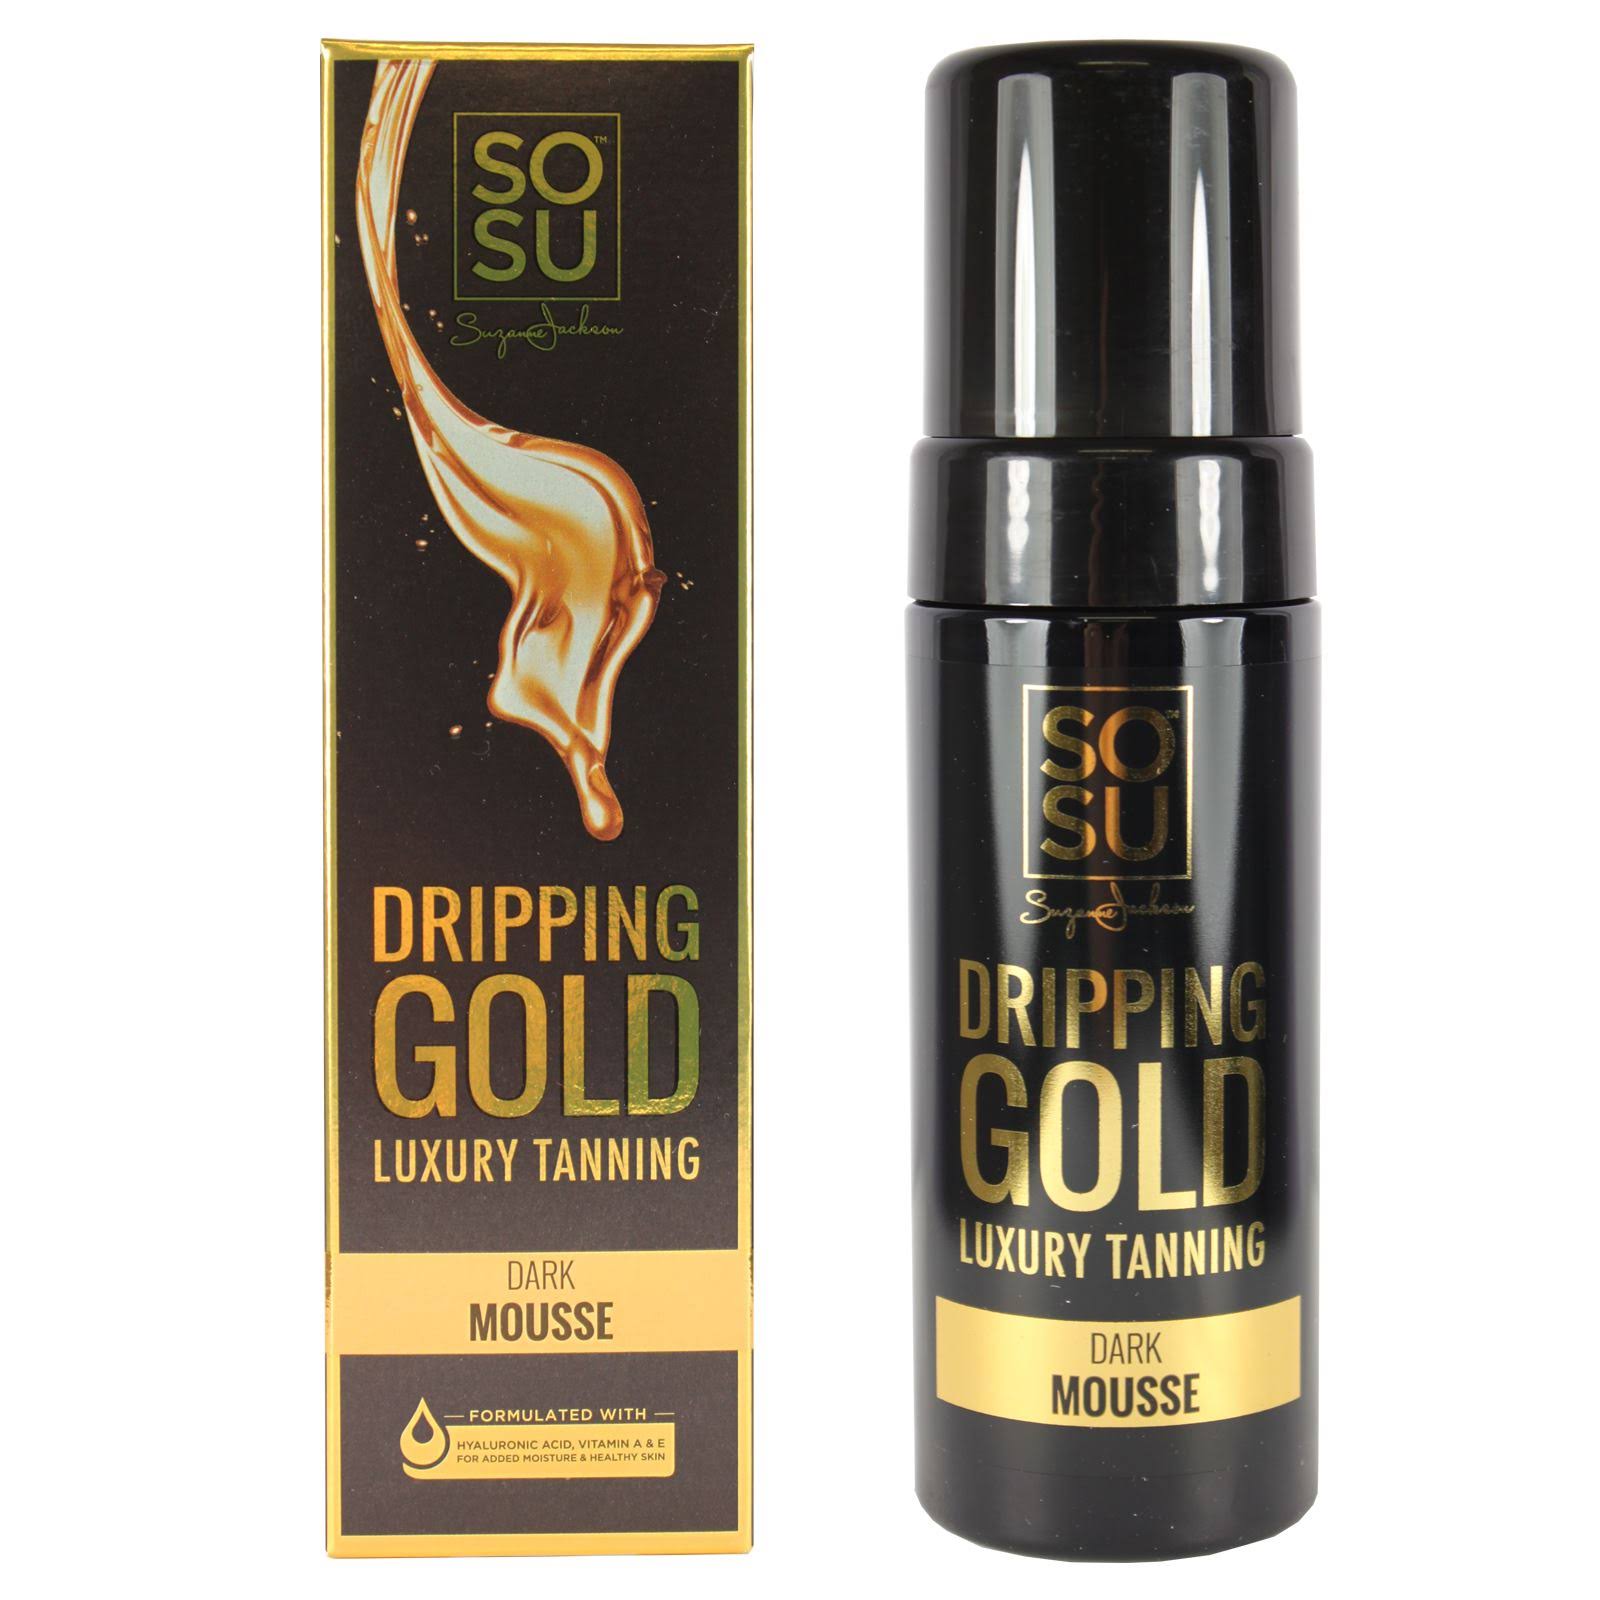 SOSU Dripping Gold Luxury Tanning Dark Mousse - 150ml